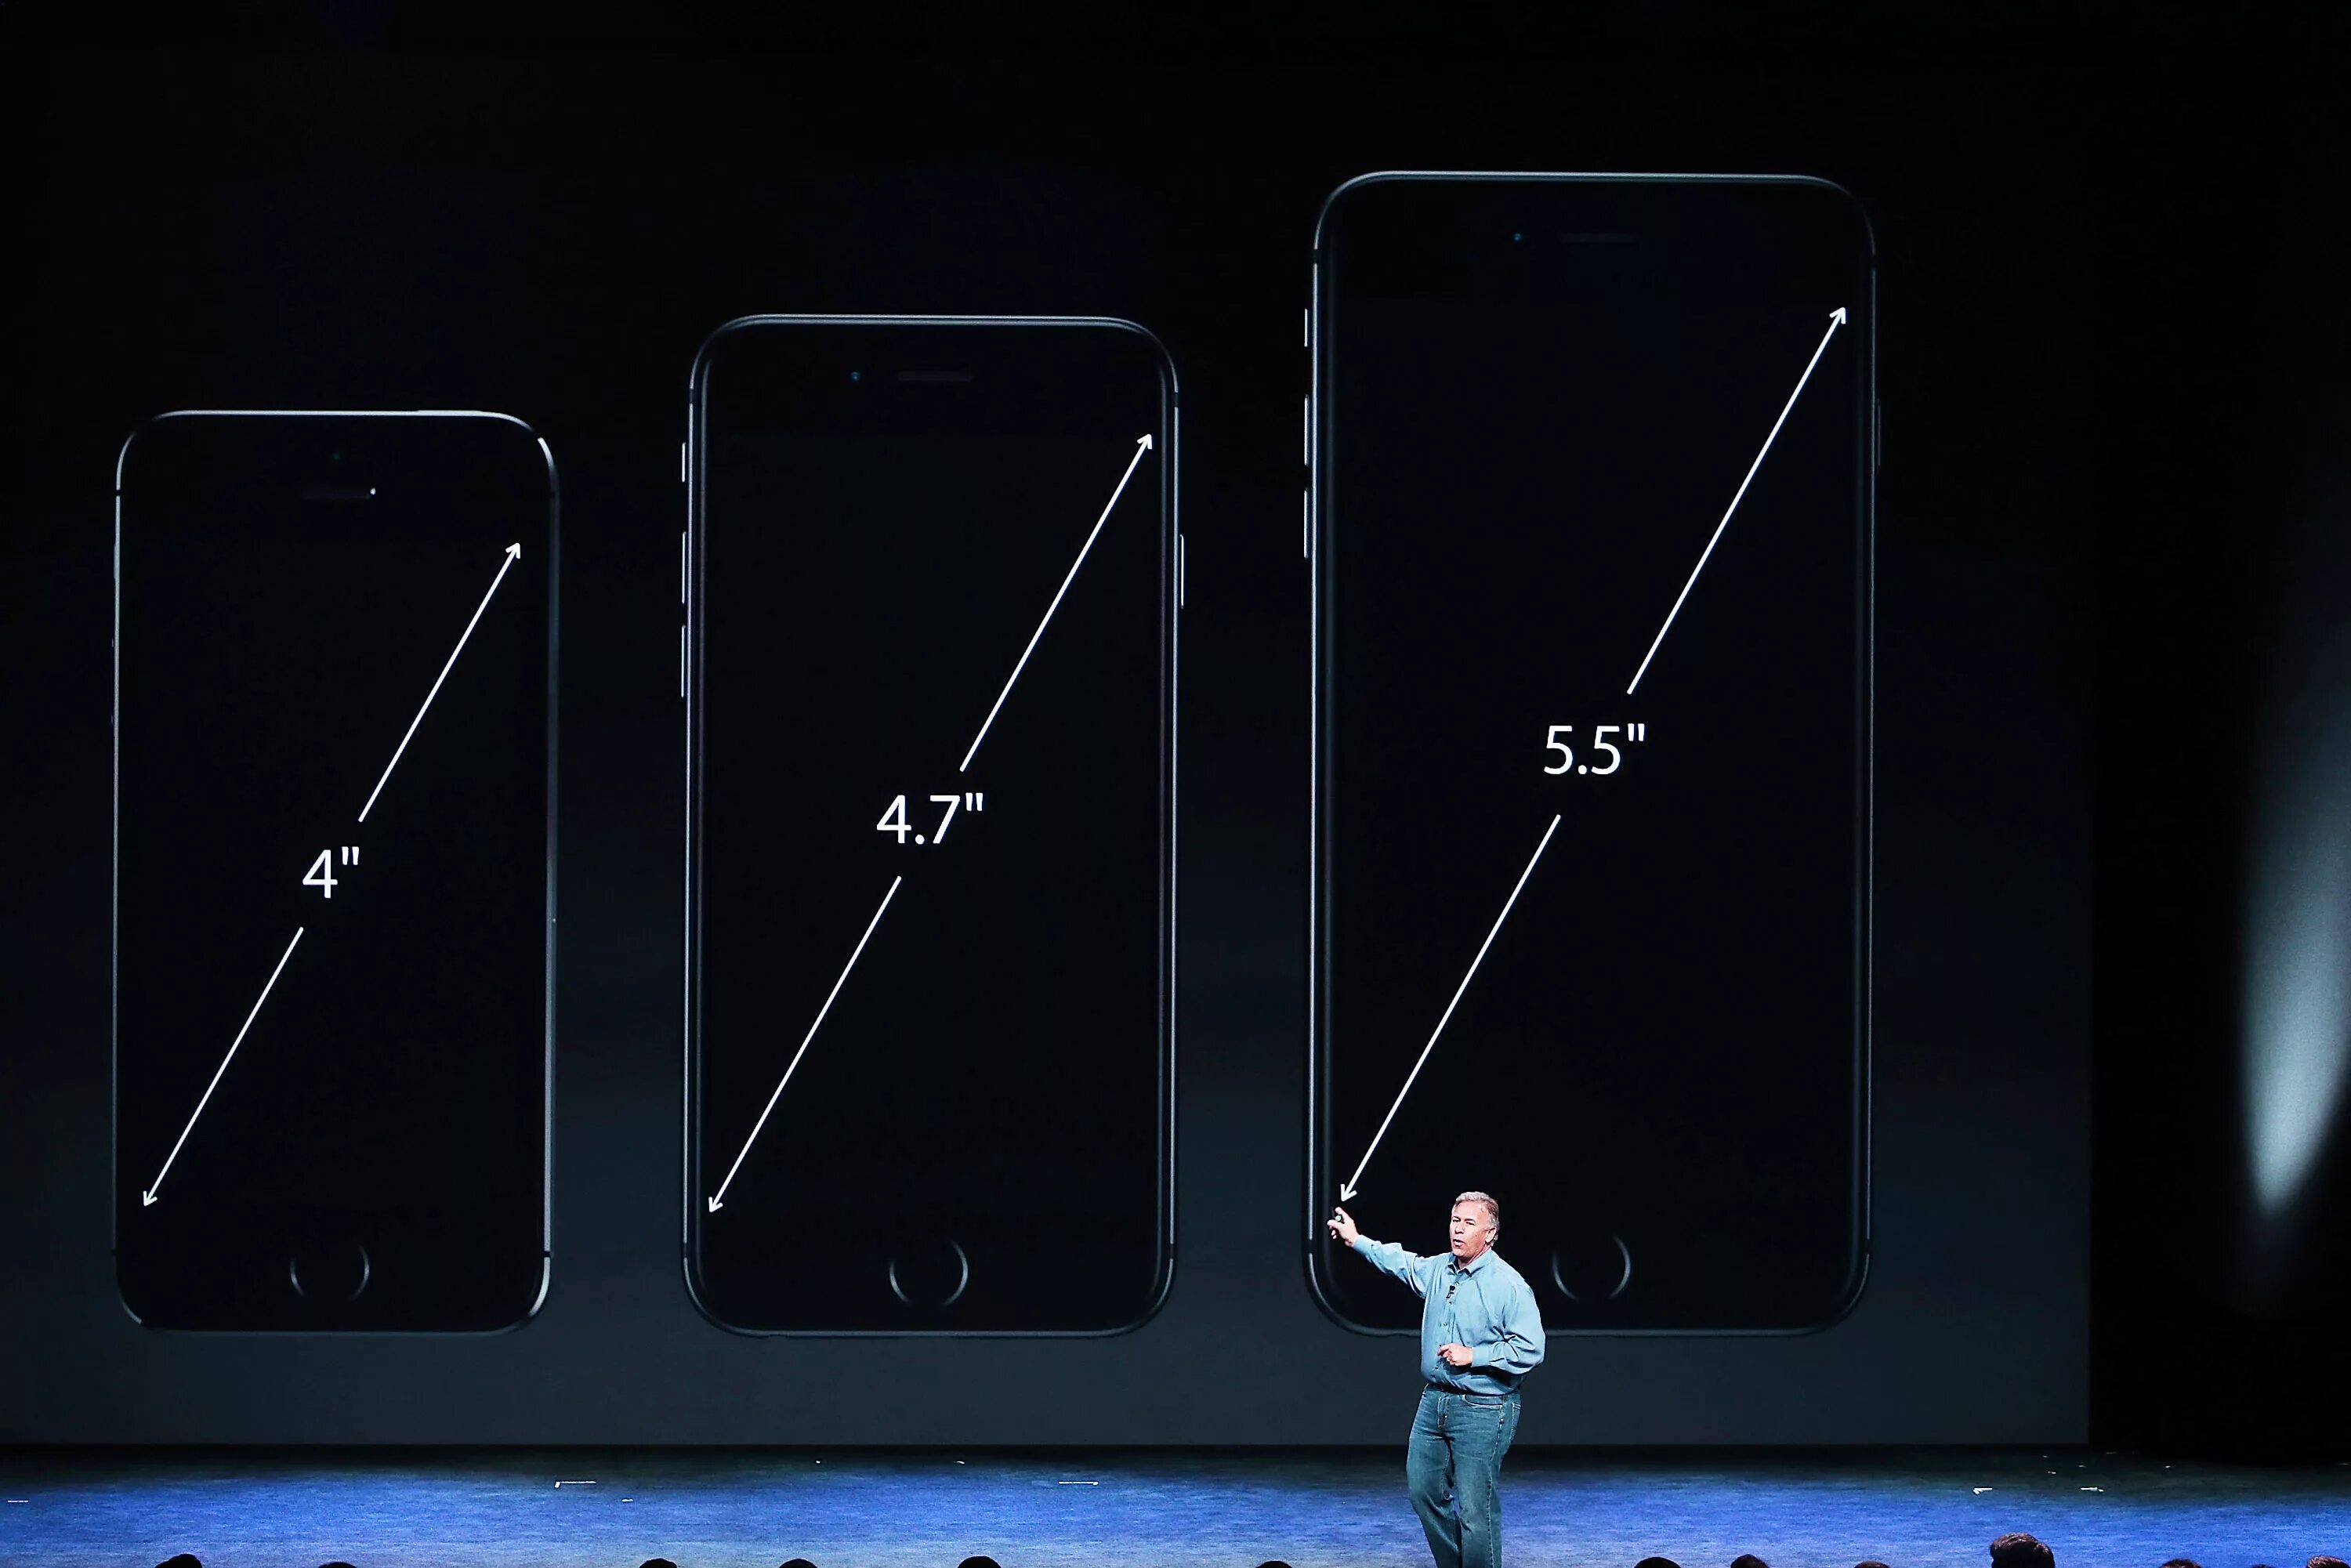 Диагональ экрана 7 3. Айфон 6 диагональ экрана. Iphone 6 Plus диагональ экрана. Айфон диагональ 6.1. Айфон 6s диагональ экрана.